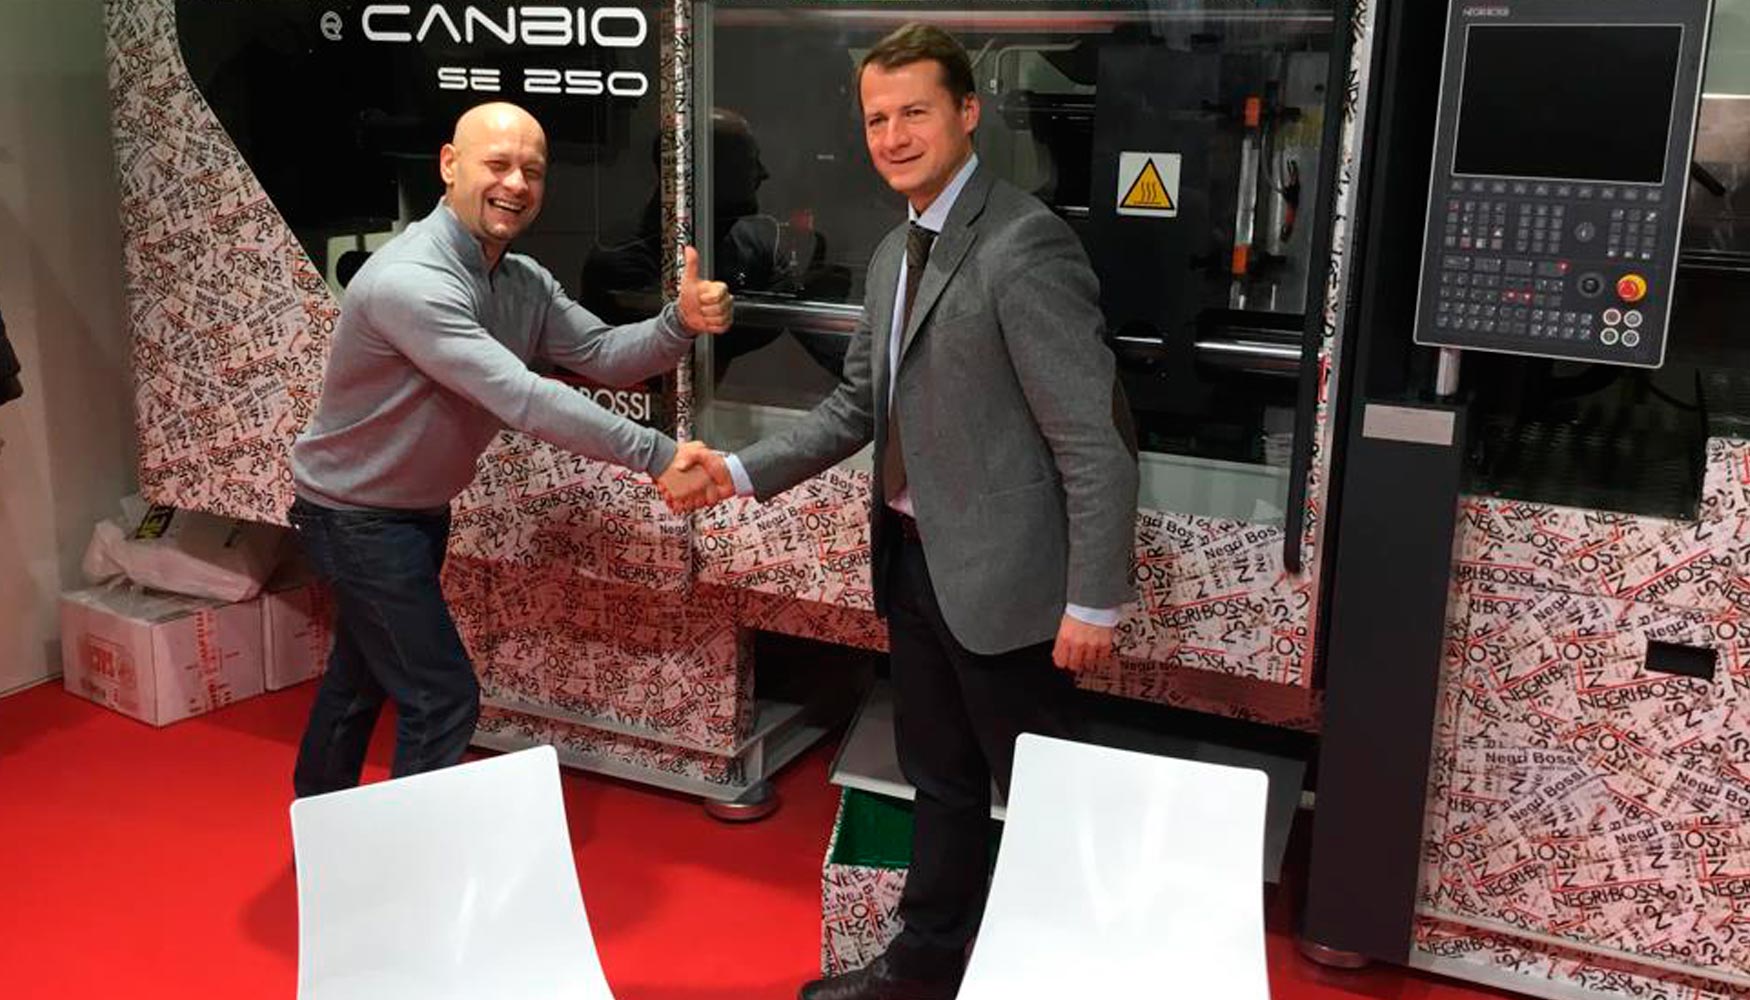 Ian Filmanovic, responsable de rea de Negri Bossi, entrega la edicin especial eCanbio 5000 a su cliente